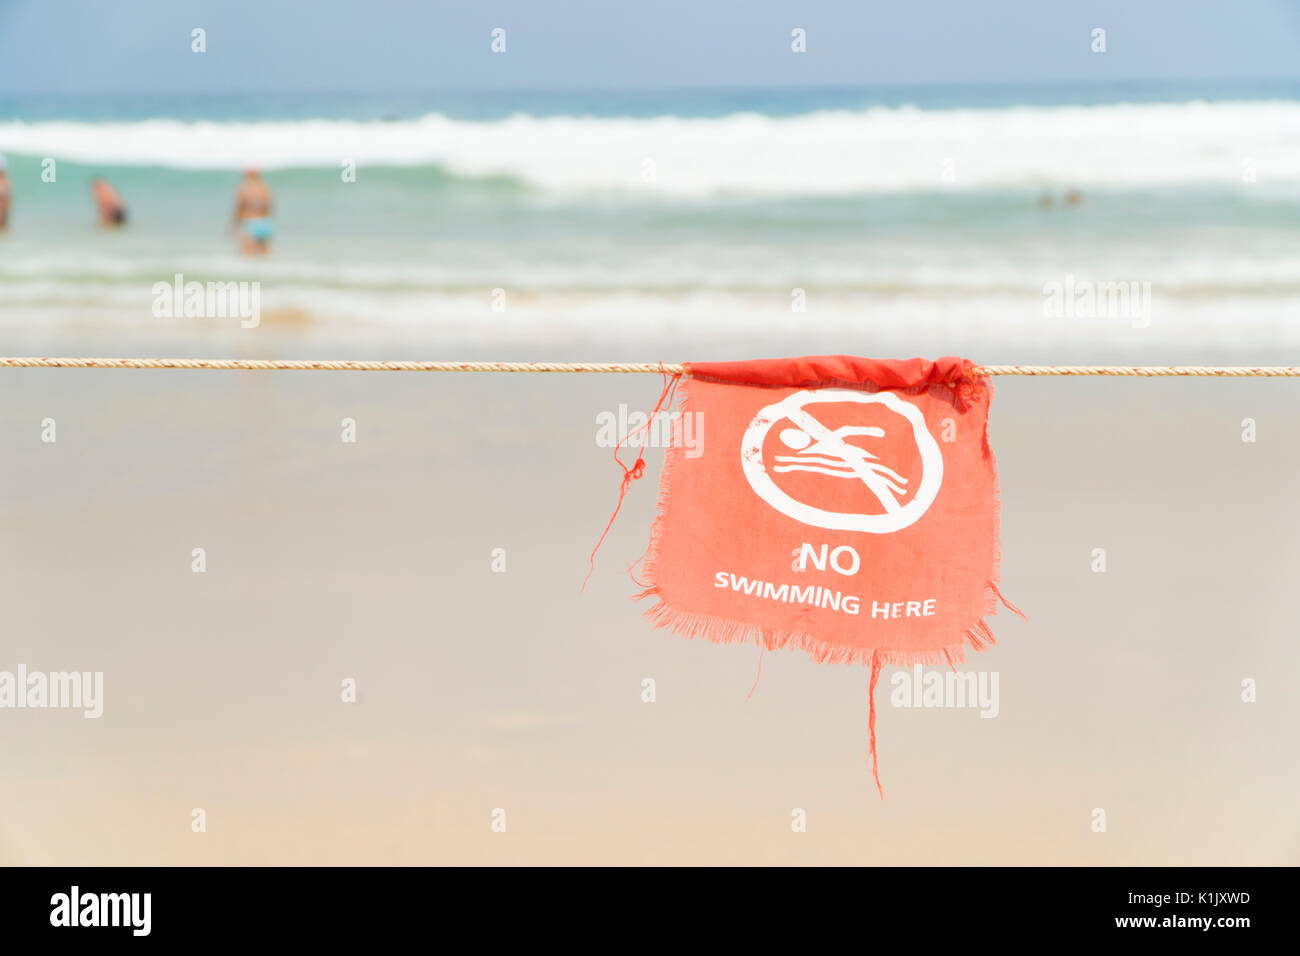 Pas de piscine ici s'inscrire zone dangereuse de la plage drapeau rouge en anglais et le texte thaï Banque D'Images